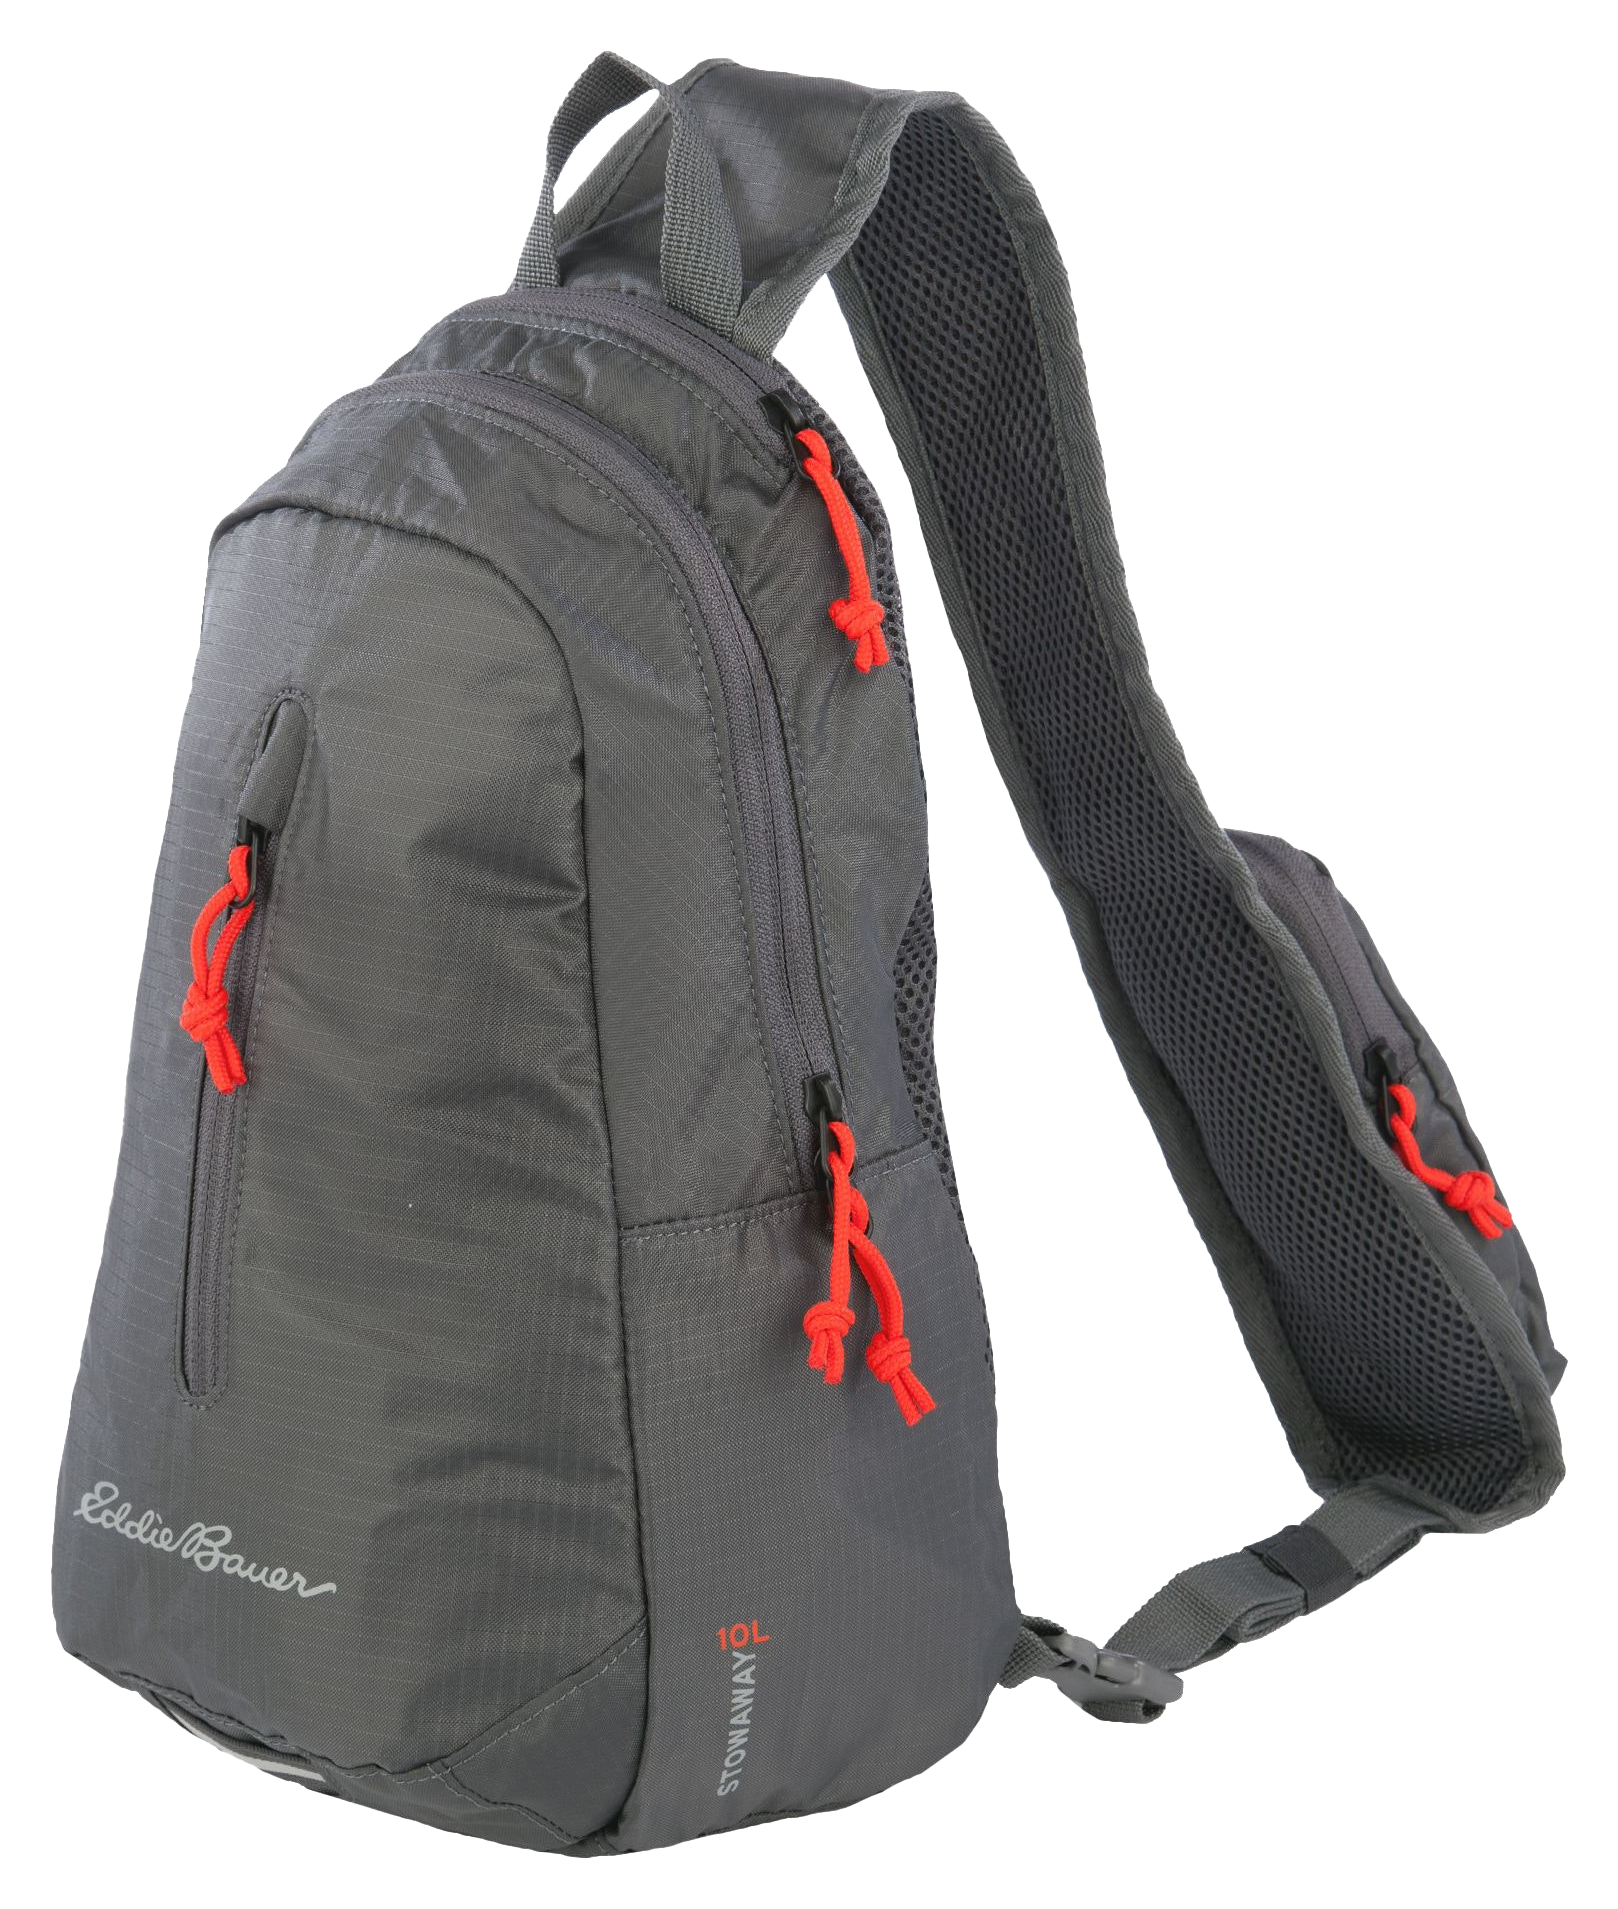 Eddie Bauer Stowaway Packable Sling 3.0 Backpack - 10L - Dark Smoke